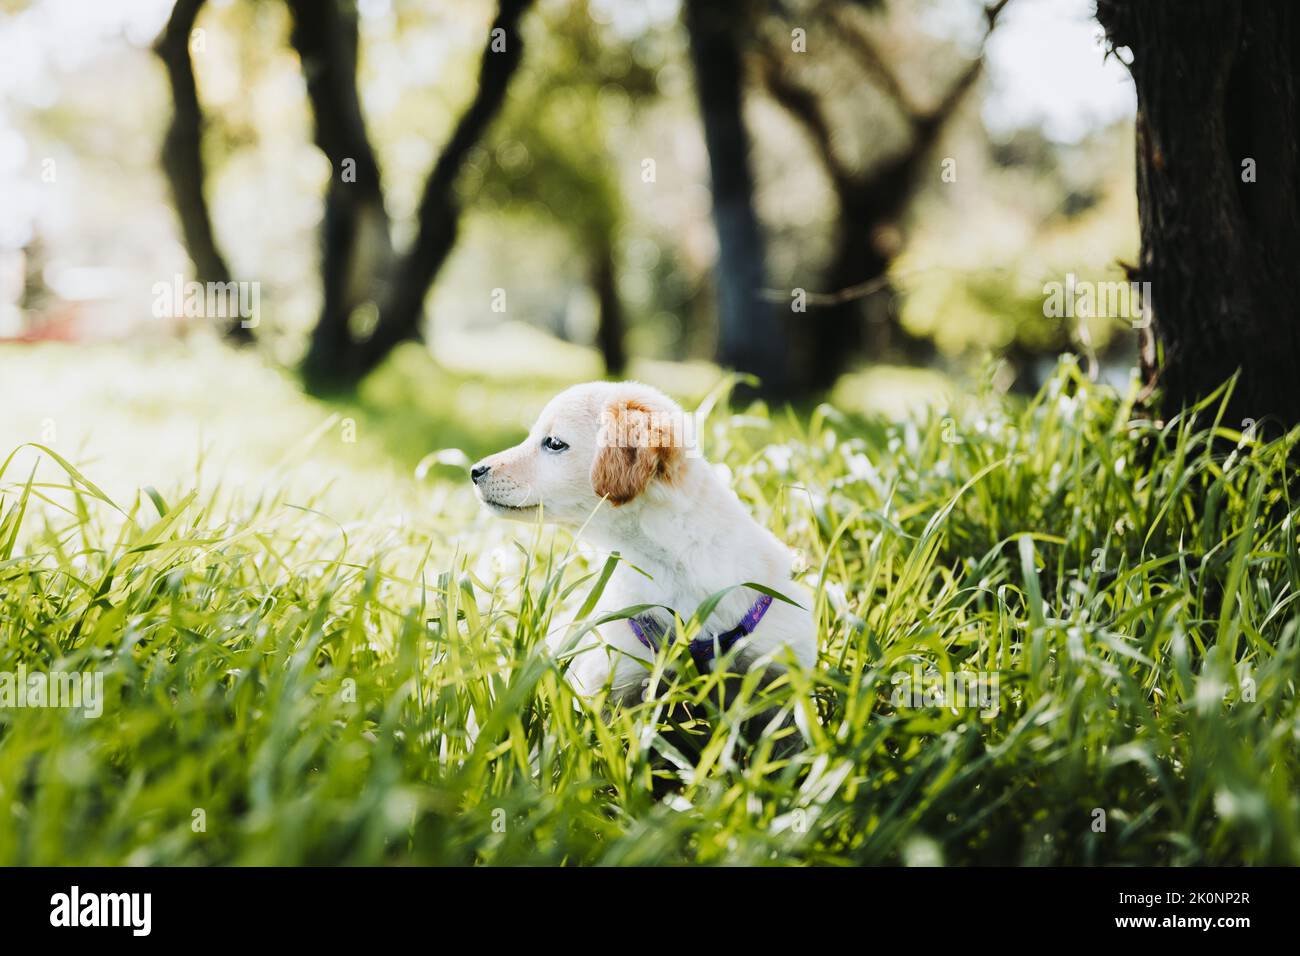 Un petit chiot mignon et doré retriever, assis sur l'herbe, semble être perdu dans le parc. Dépression chez les chiens Banque D'Images